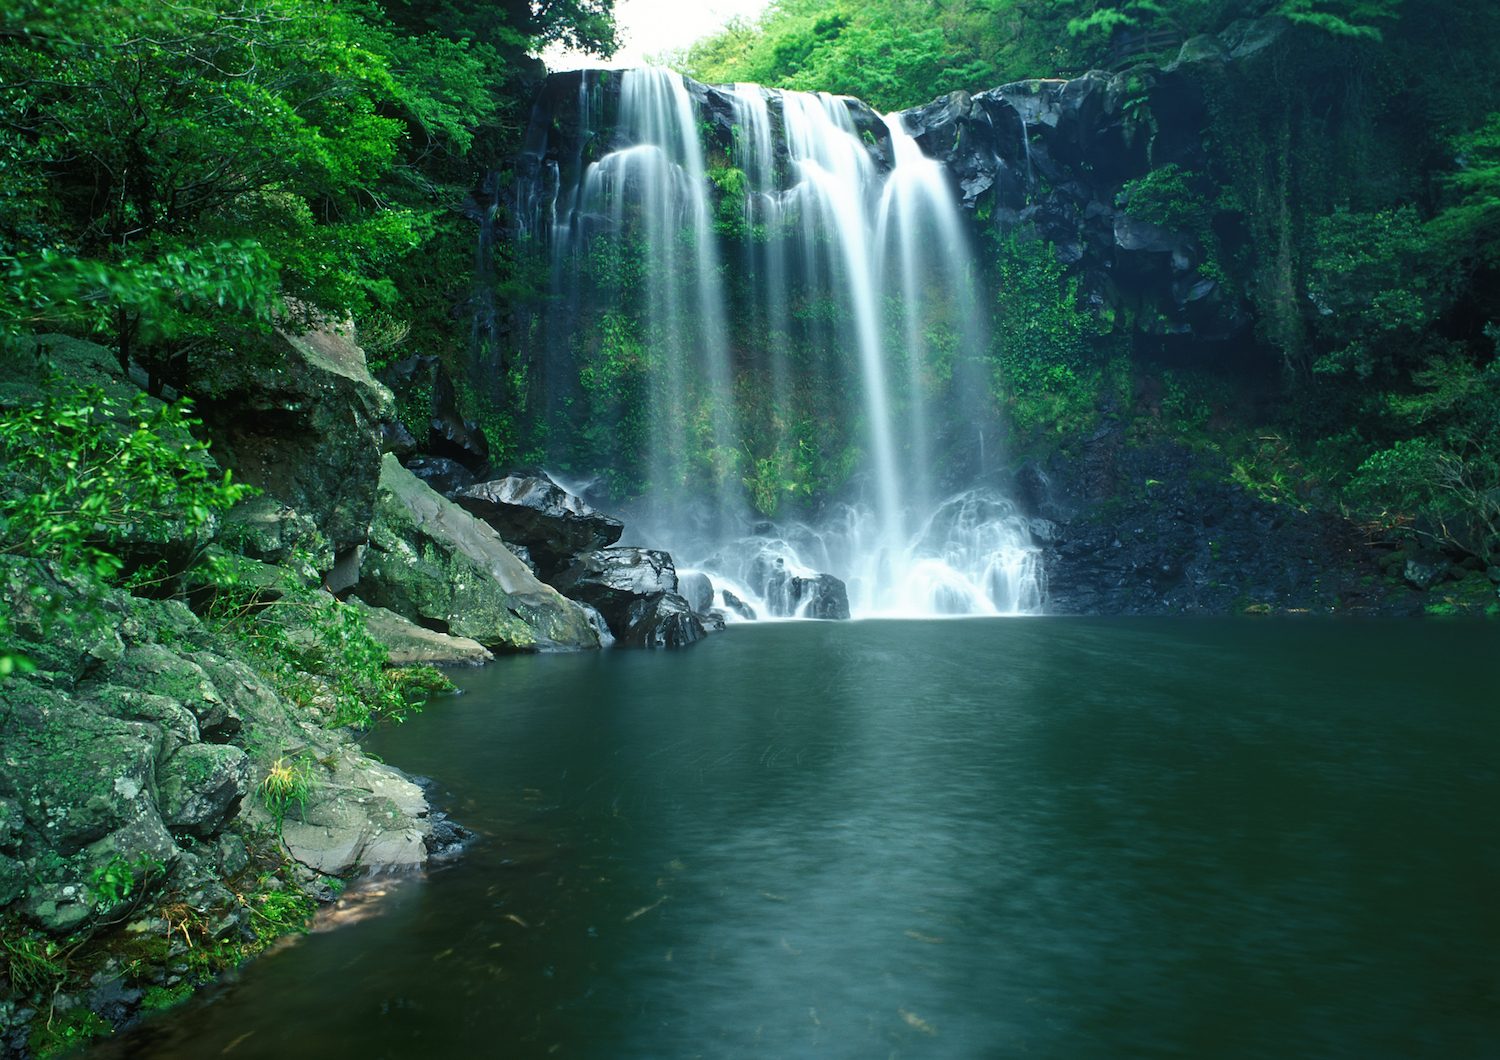 Jeju waterfall